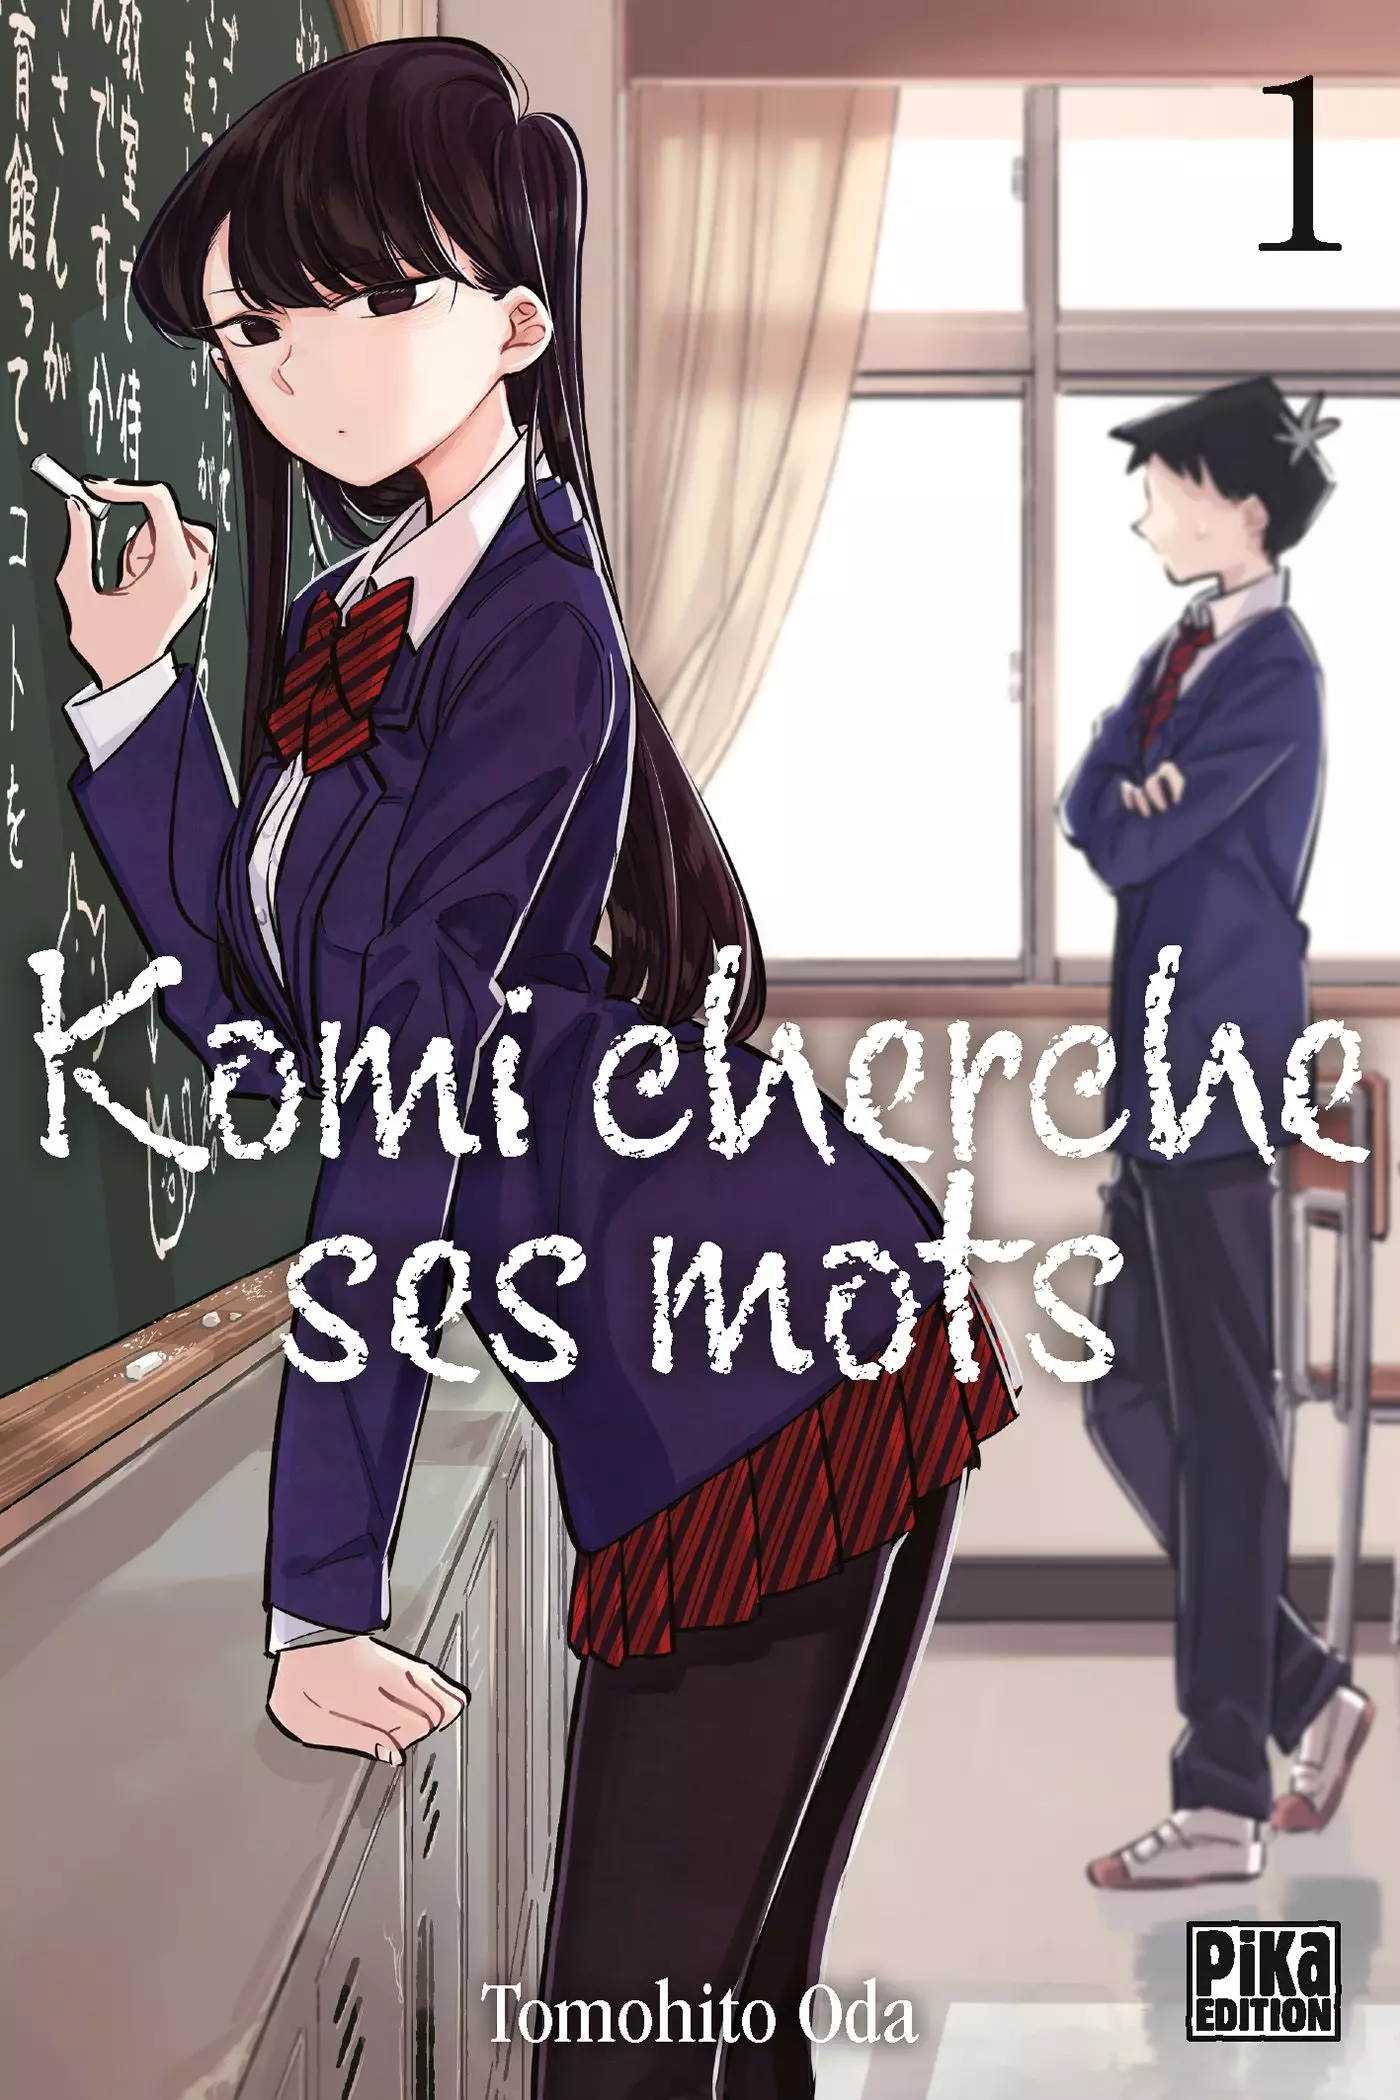 Manga - Komi cherche ses mots